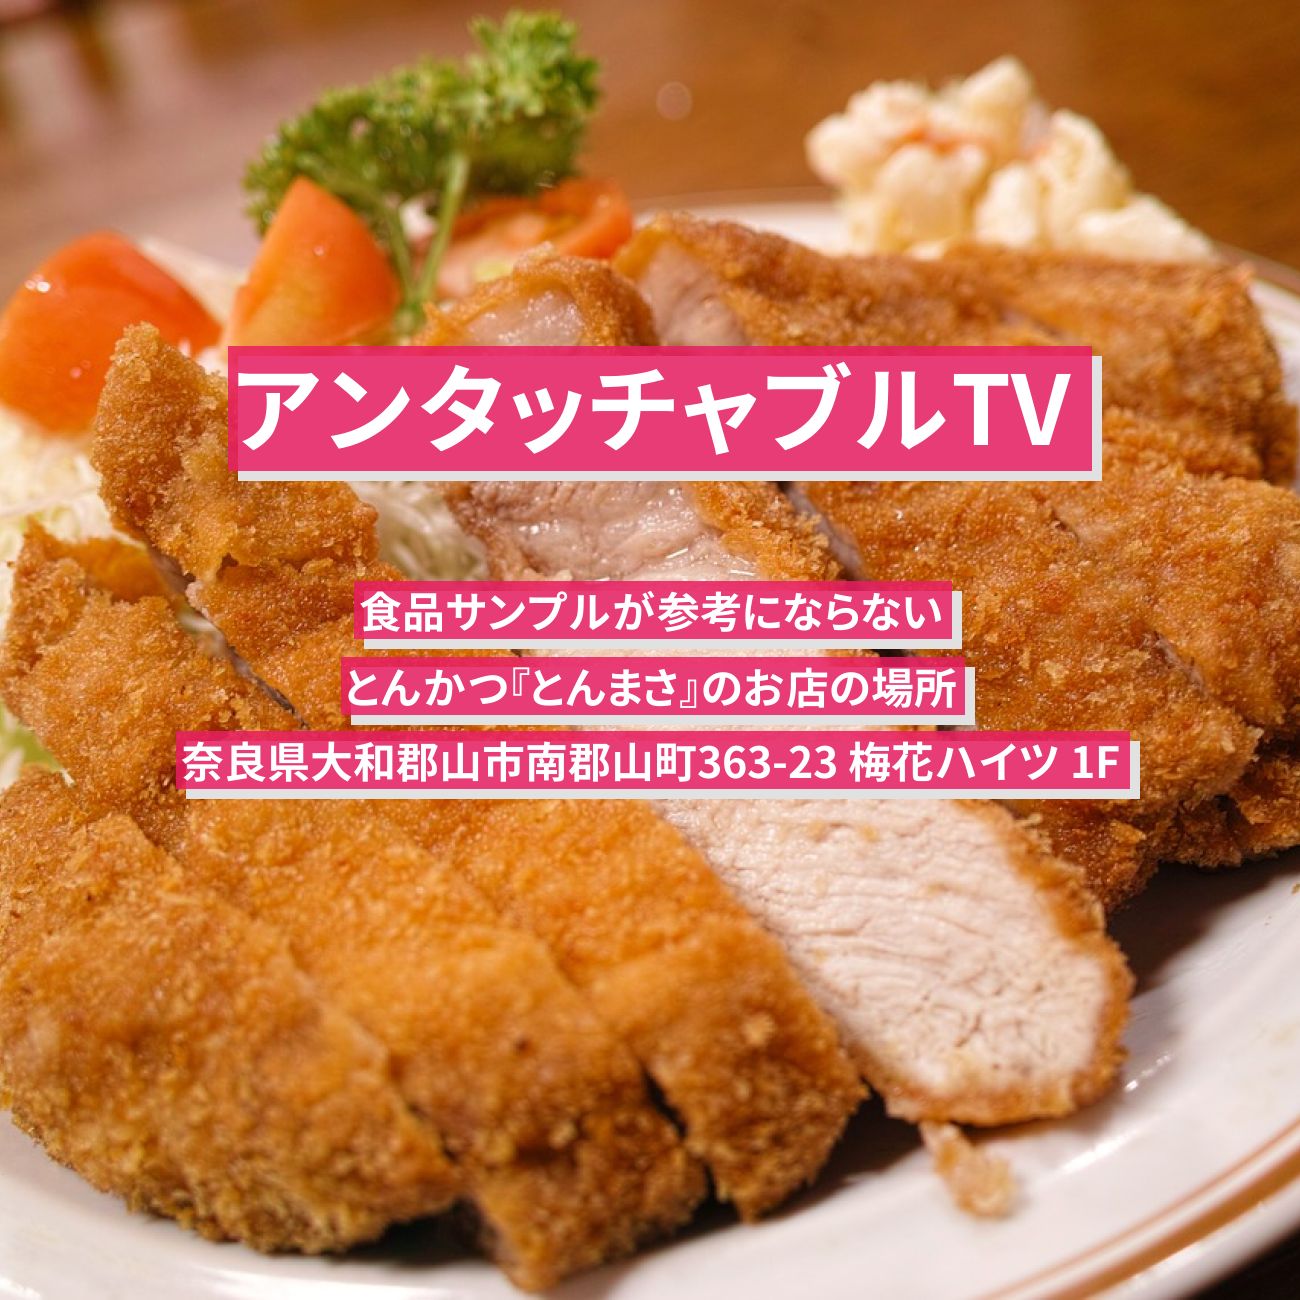 【アンタッチャブルTV】とんかつ・若鶏かつ(食品サンプルと違う)『とんまさ』奈良県大和郡山のお店の場所